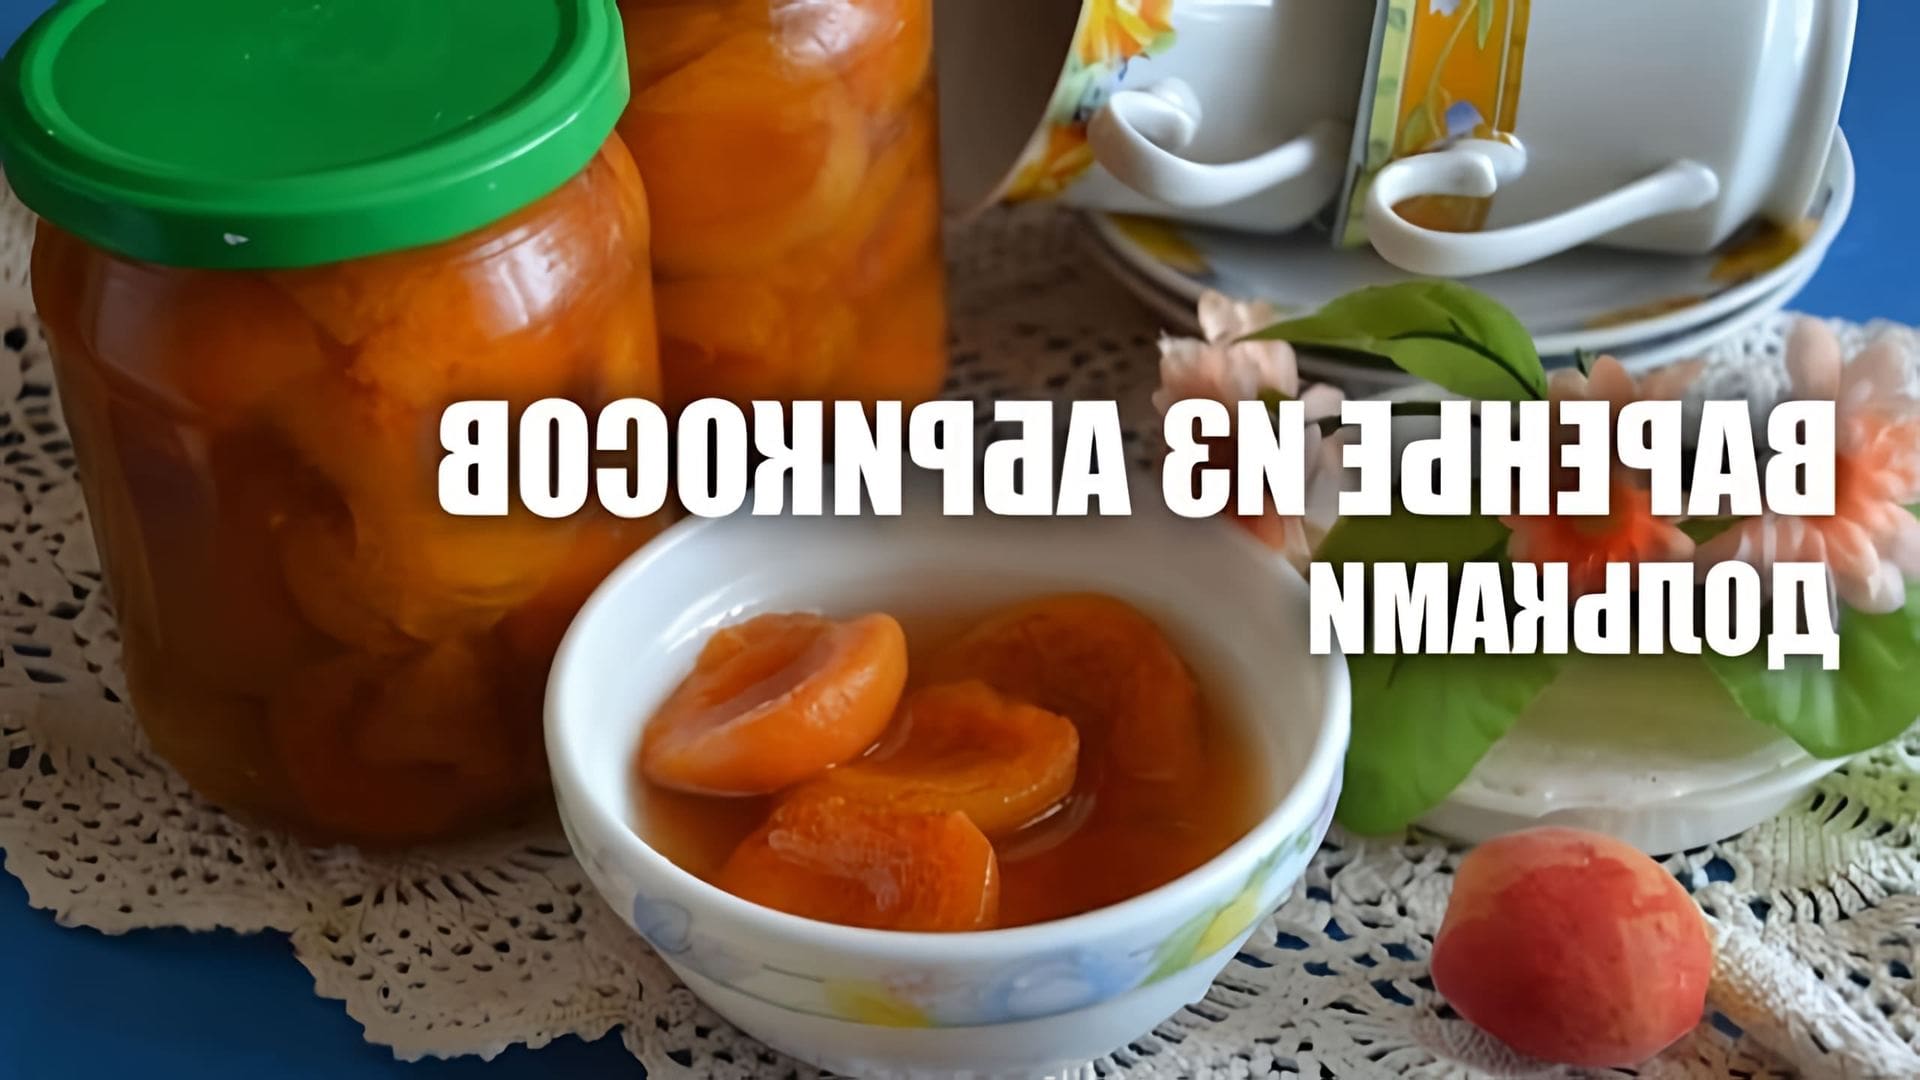 В этом видео демонстрируется процесс приготовления варенья из абрикосов дольками